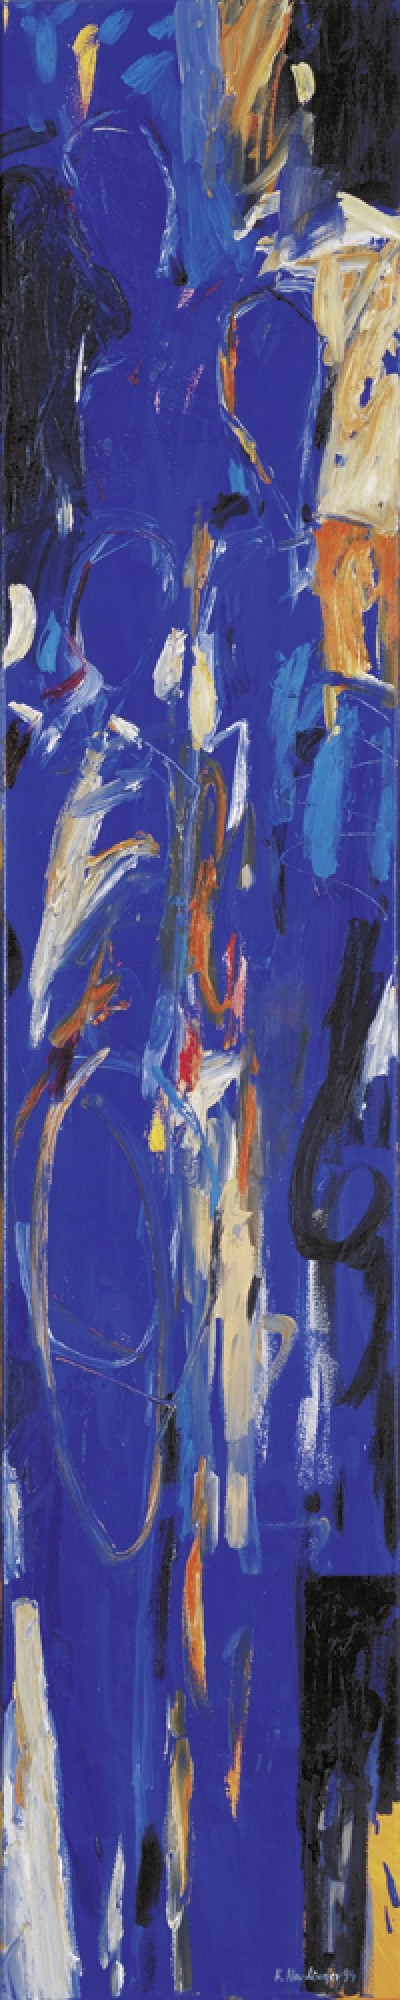 Karin R. Haslinger, Stele Blau, 1994 (Zeitgenössisch, Modern, Abstrakt, Malerei, Menschen, Personen, blau)